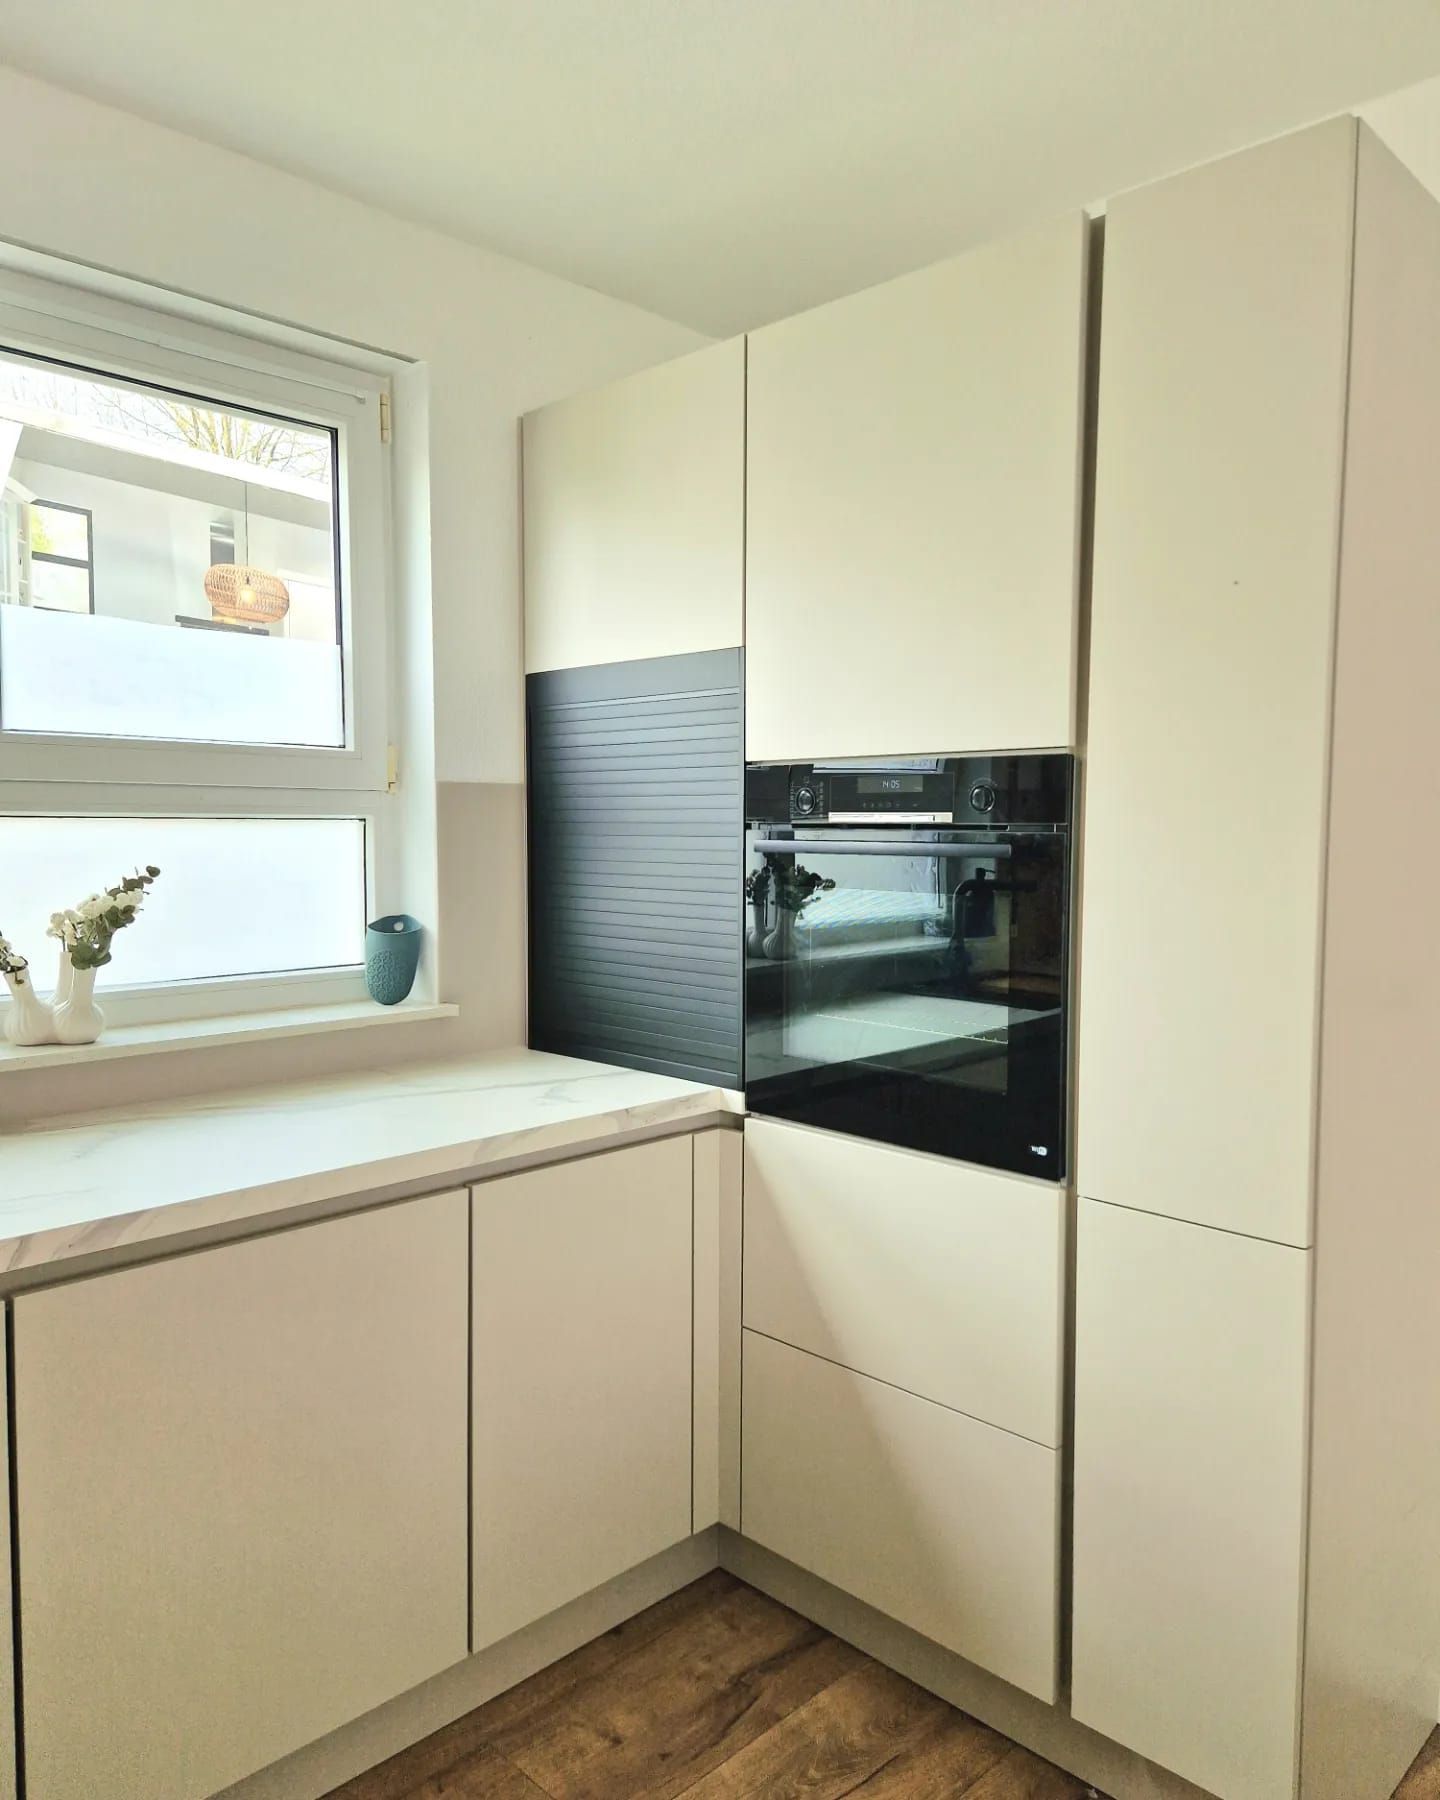 Entdecken Sie das Herzstück Ihrer Küche mit erstklassigen Bosch und Beko Einbaugeräten für eine perfekte Kocherfahrung.